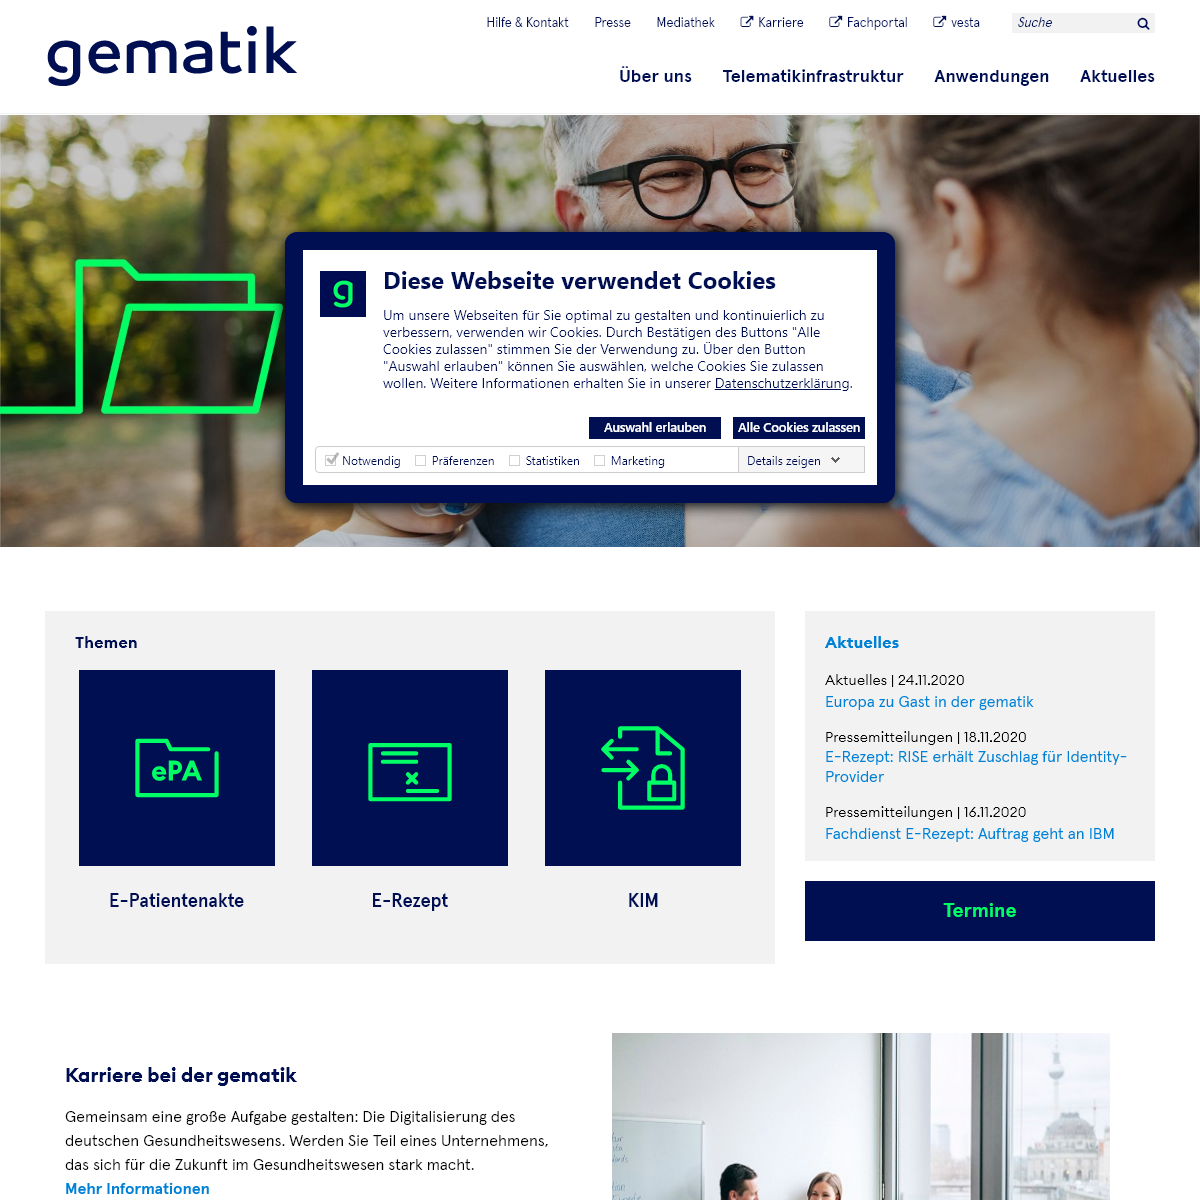 A complete backup of gematik.de